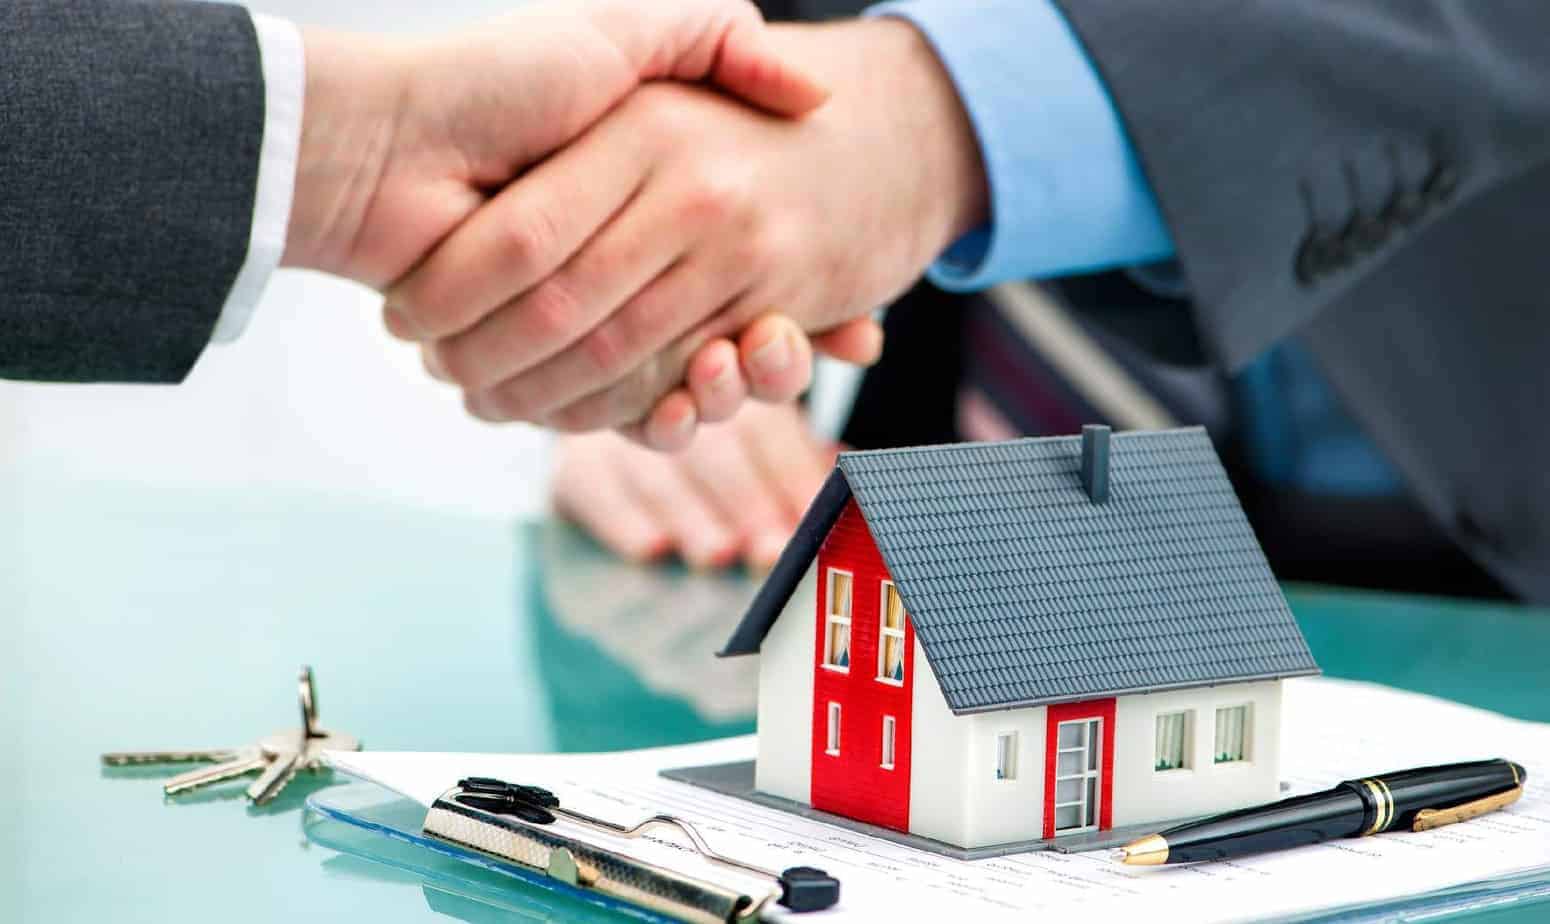 Hợp đồng thuê mua nhà có bắt buộc phải công chứng hay không?